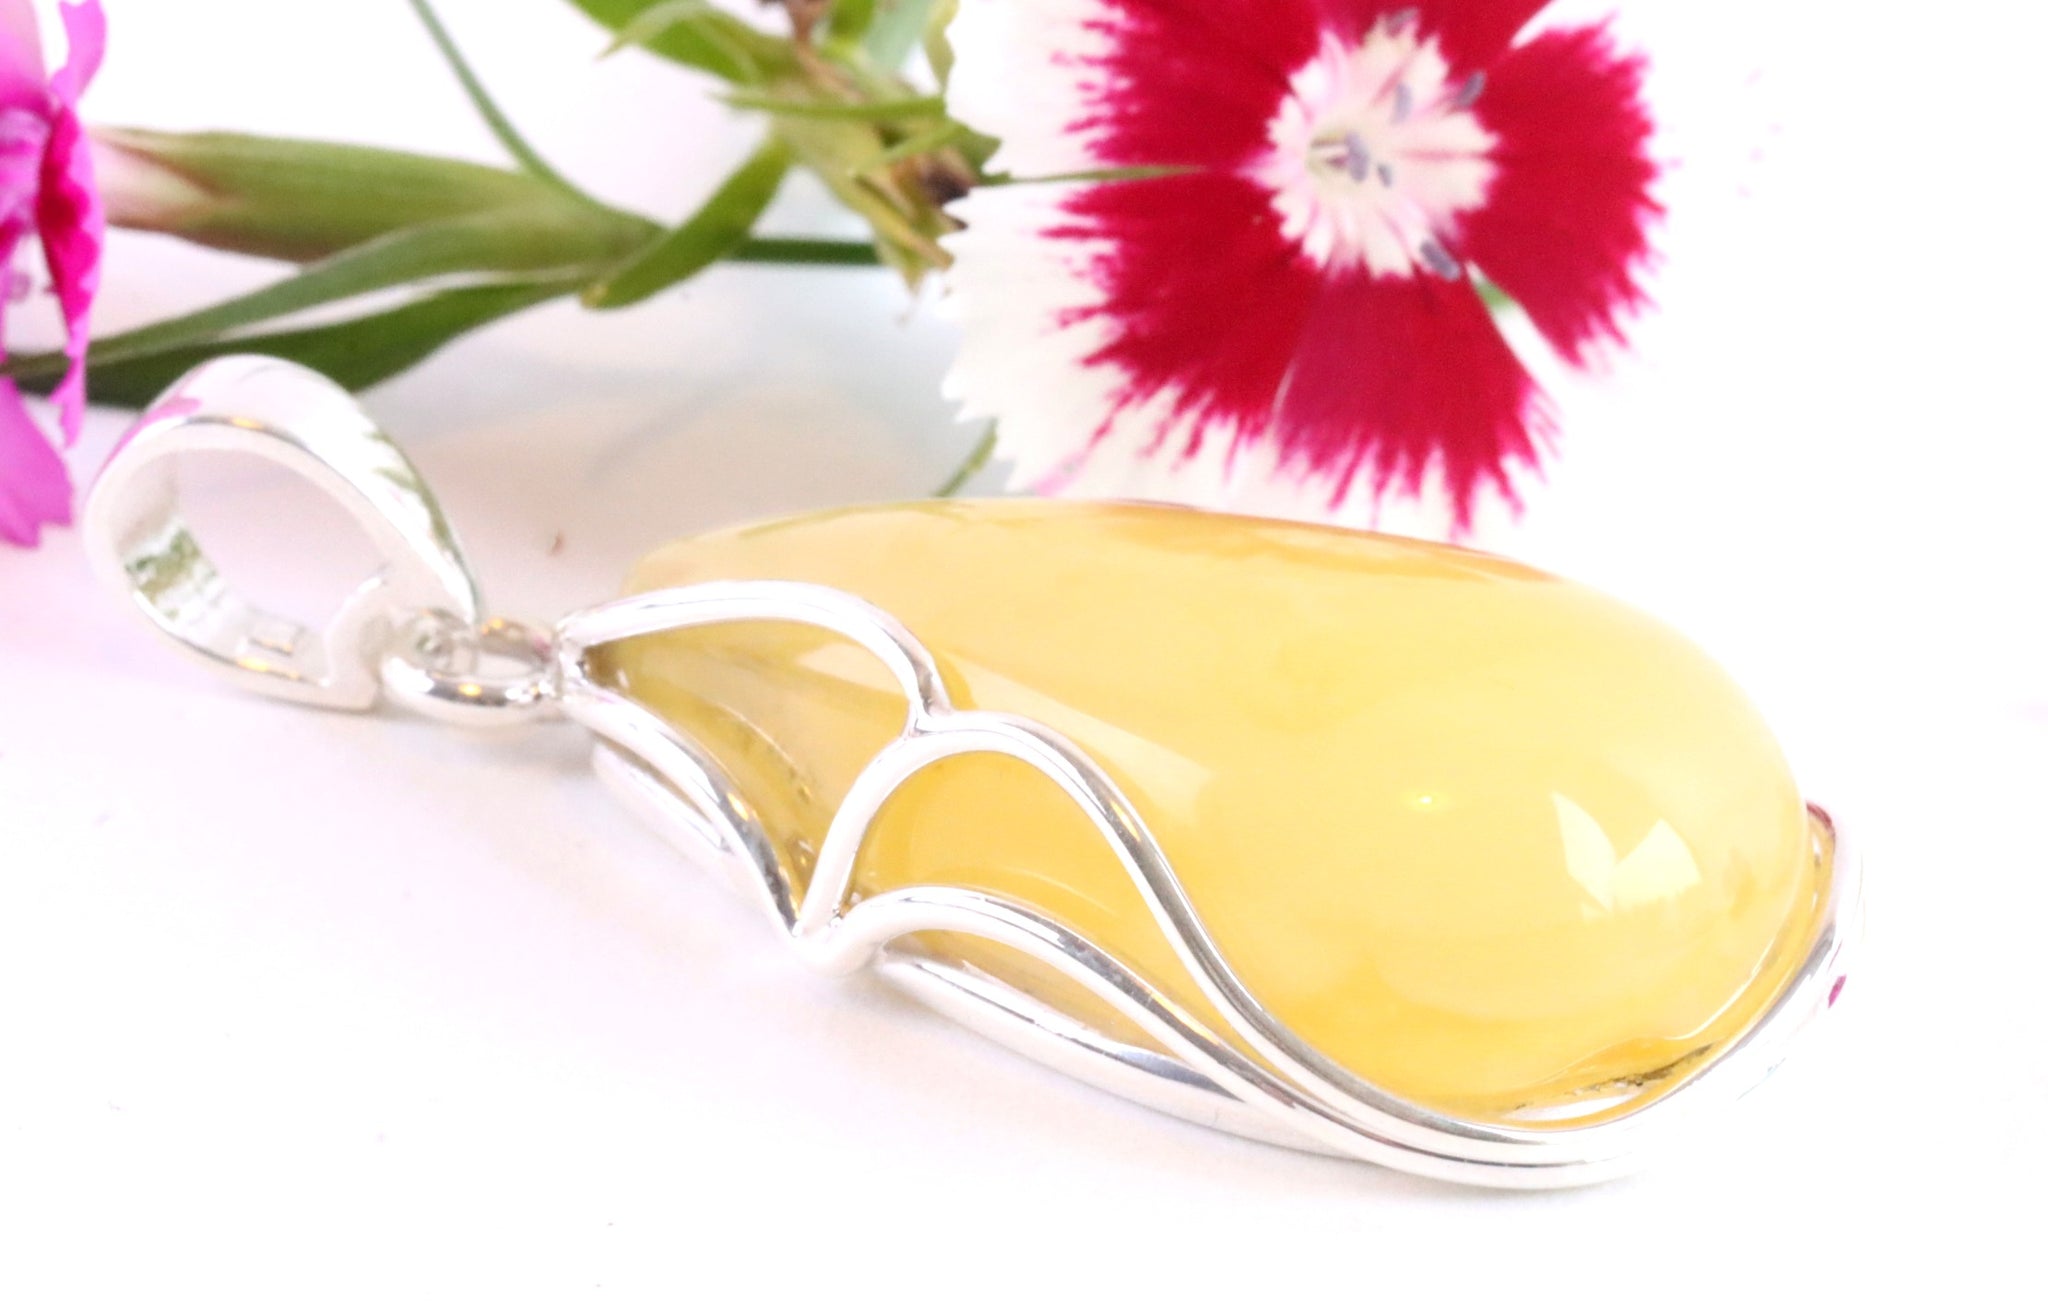 100% Handmade Butter Amber Gemstone Pendant Gift